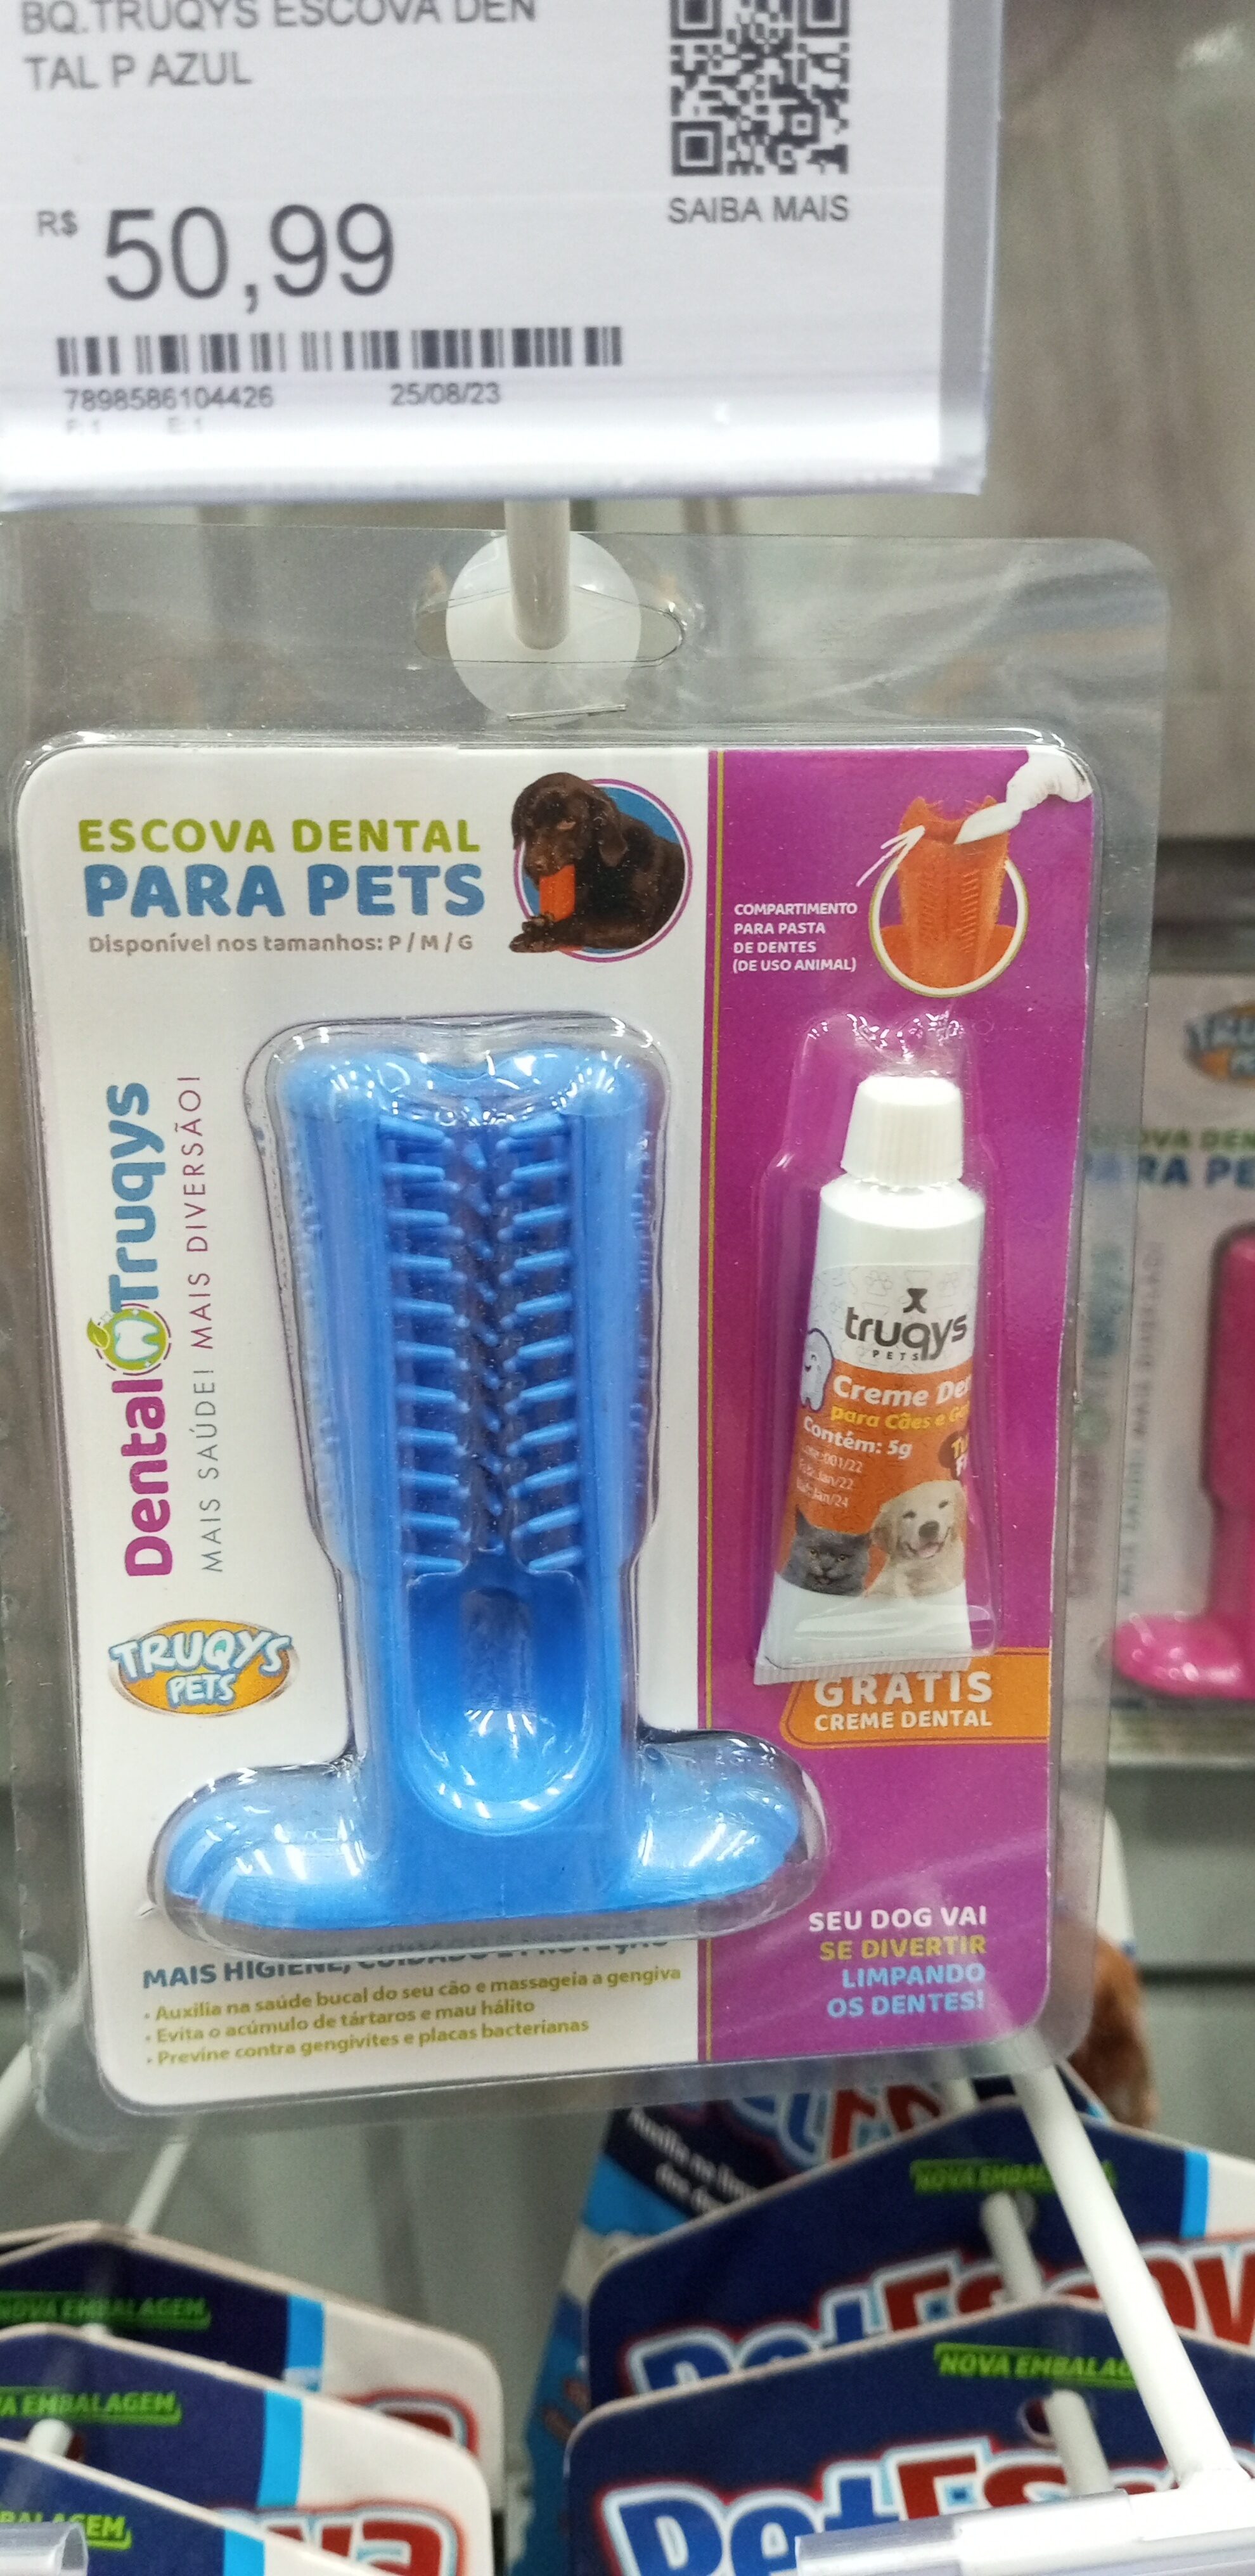 Bq. Truqys escova de dente azul - Product - pt